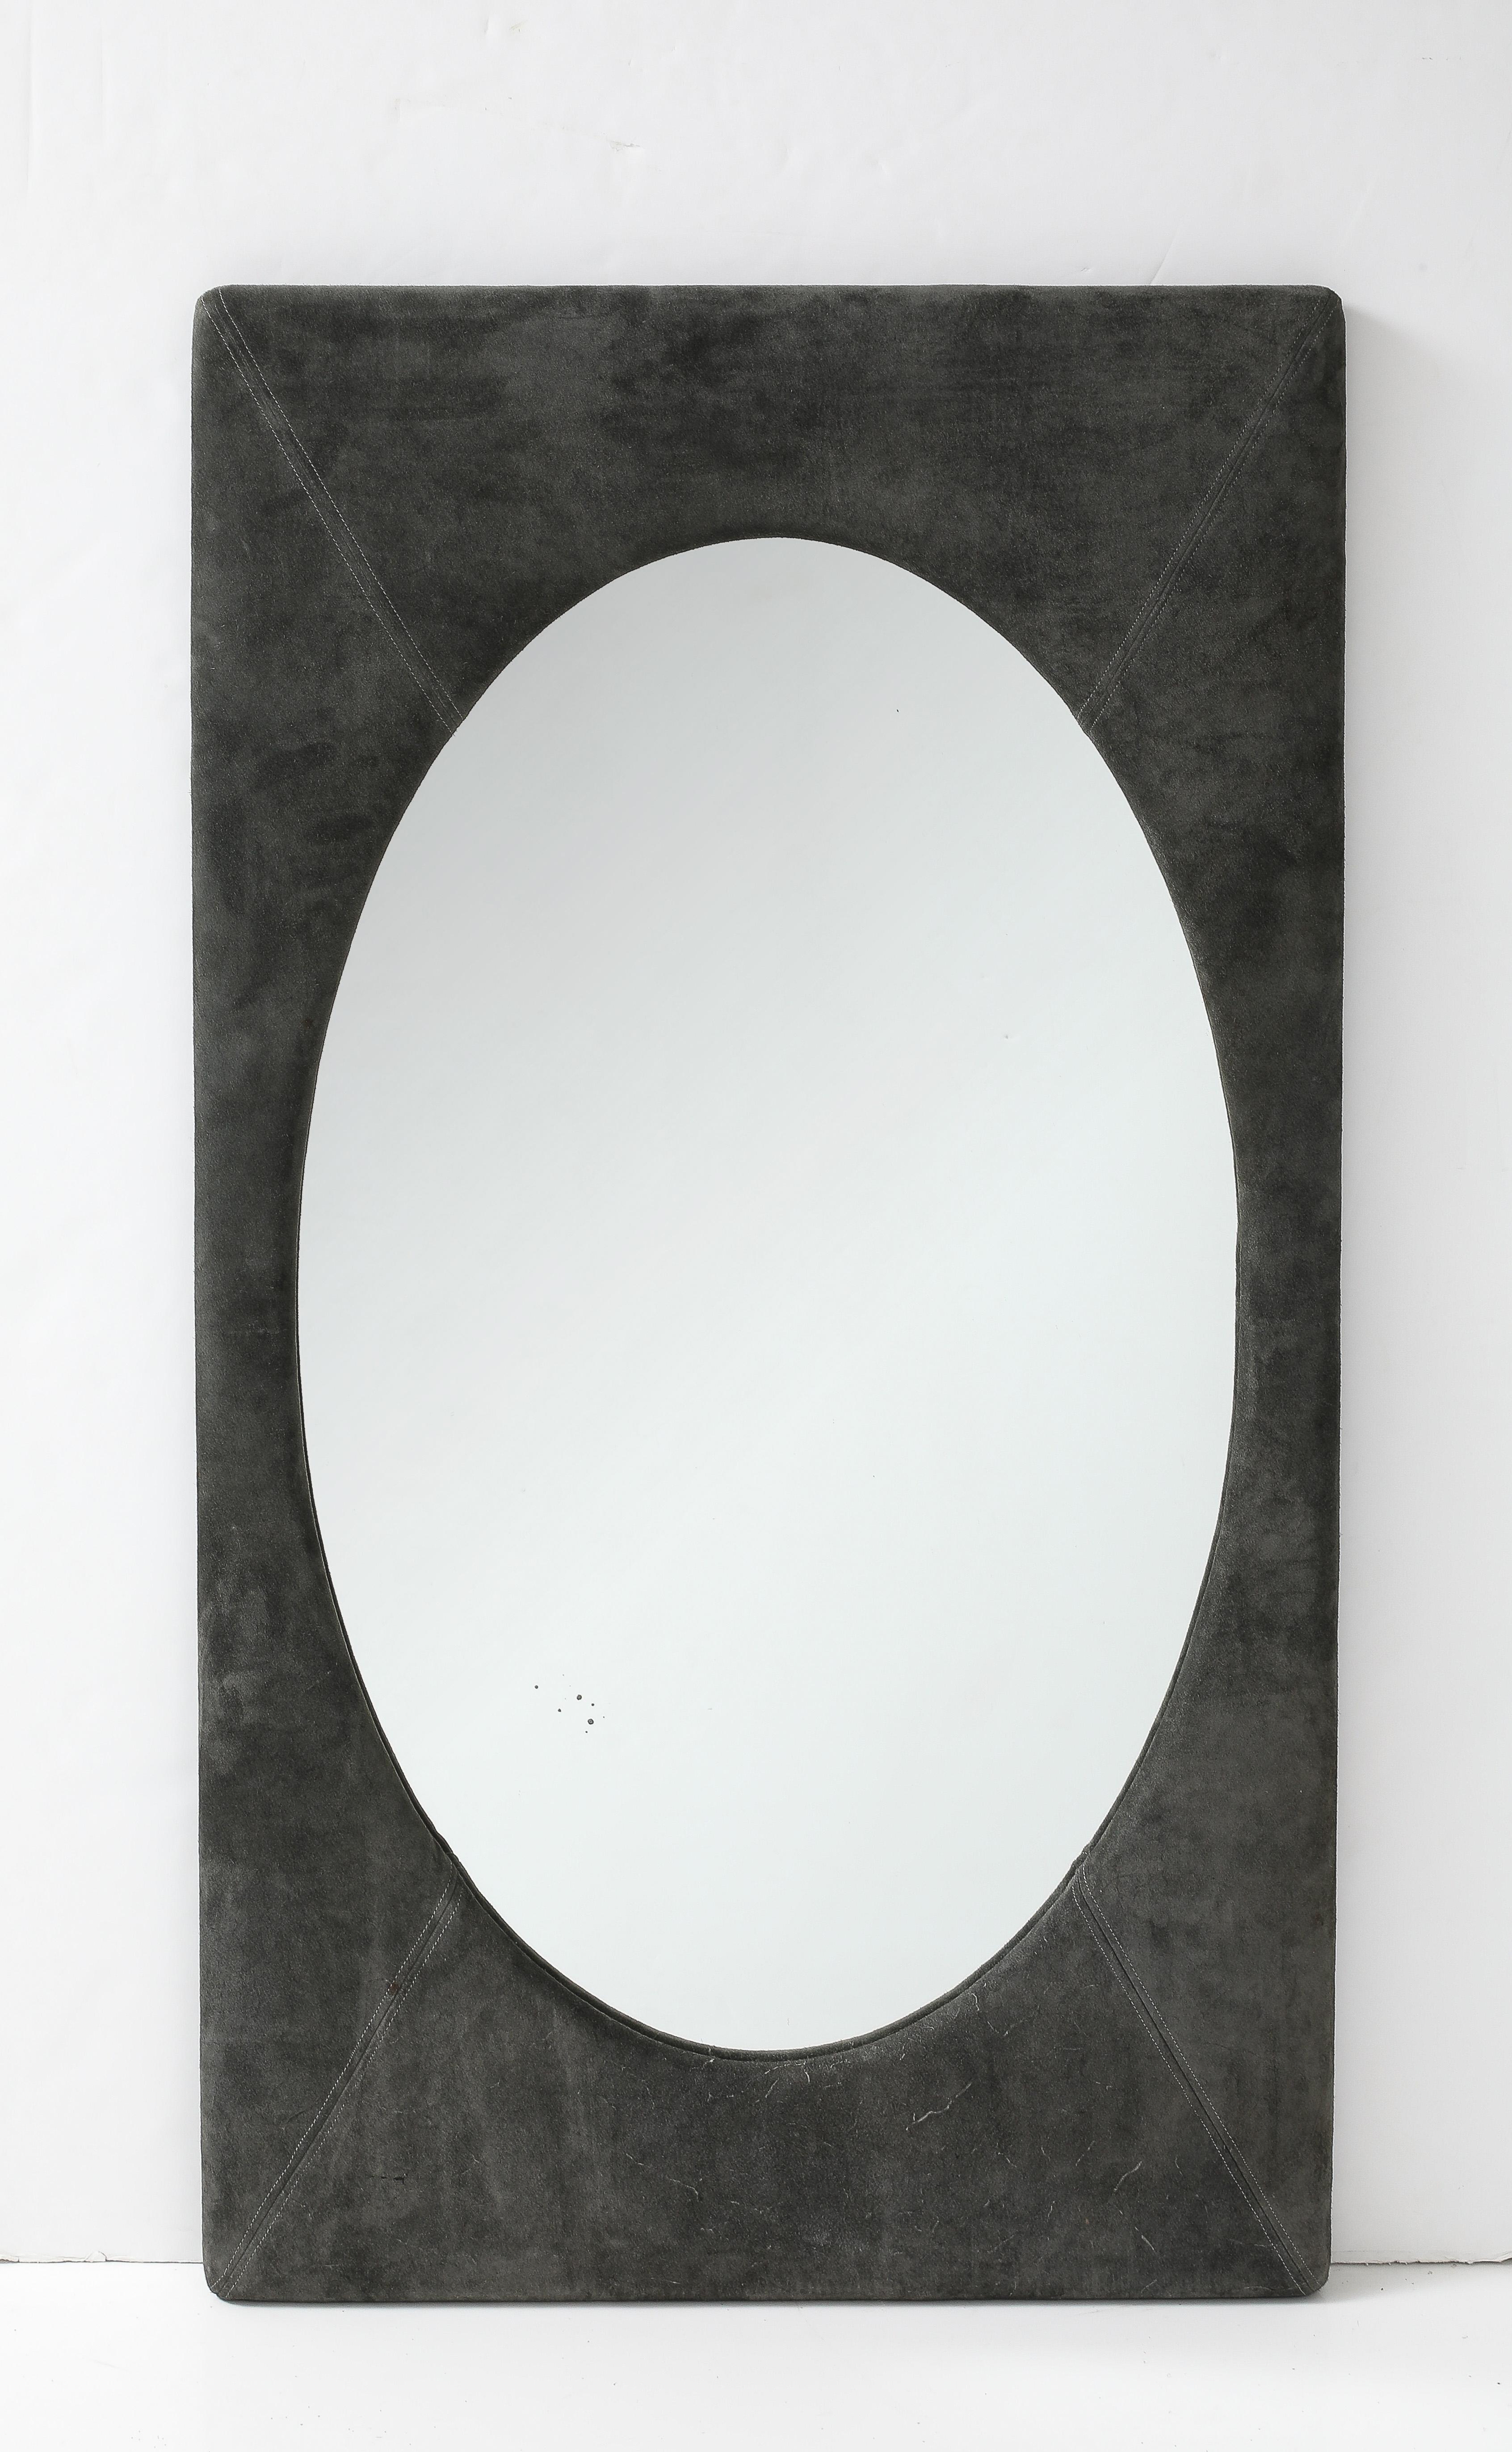 The Moderns Modern Paire de miroirs muraux ovales par Sergio Rodrigues, 1960s

Paire de miroirs muraux ovales avec structure en contreplaqué recouvert de tissu.






